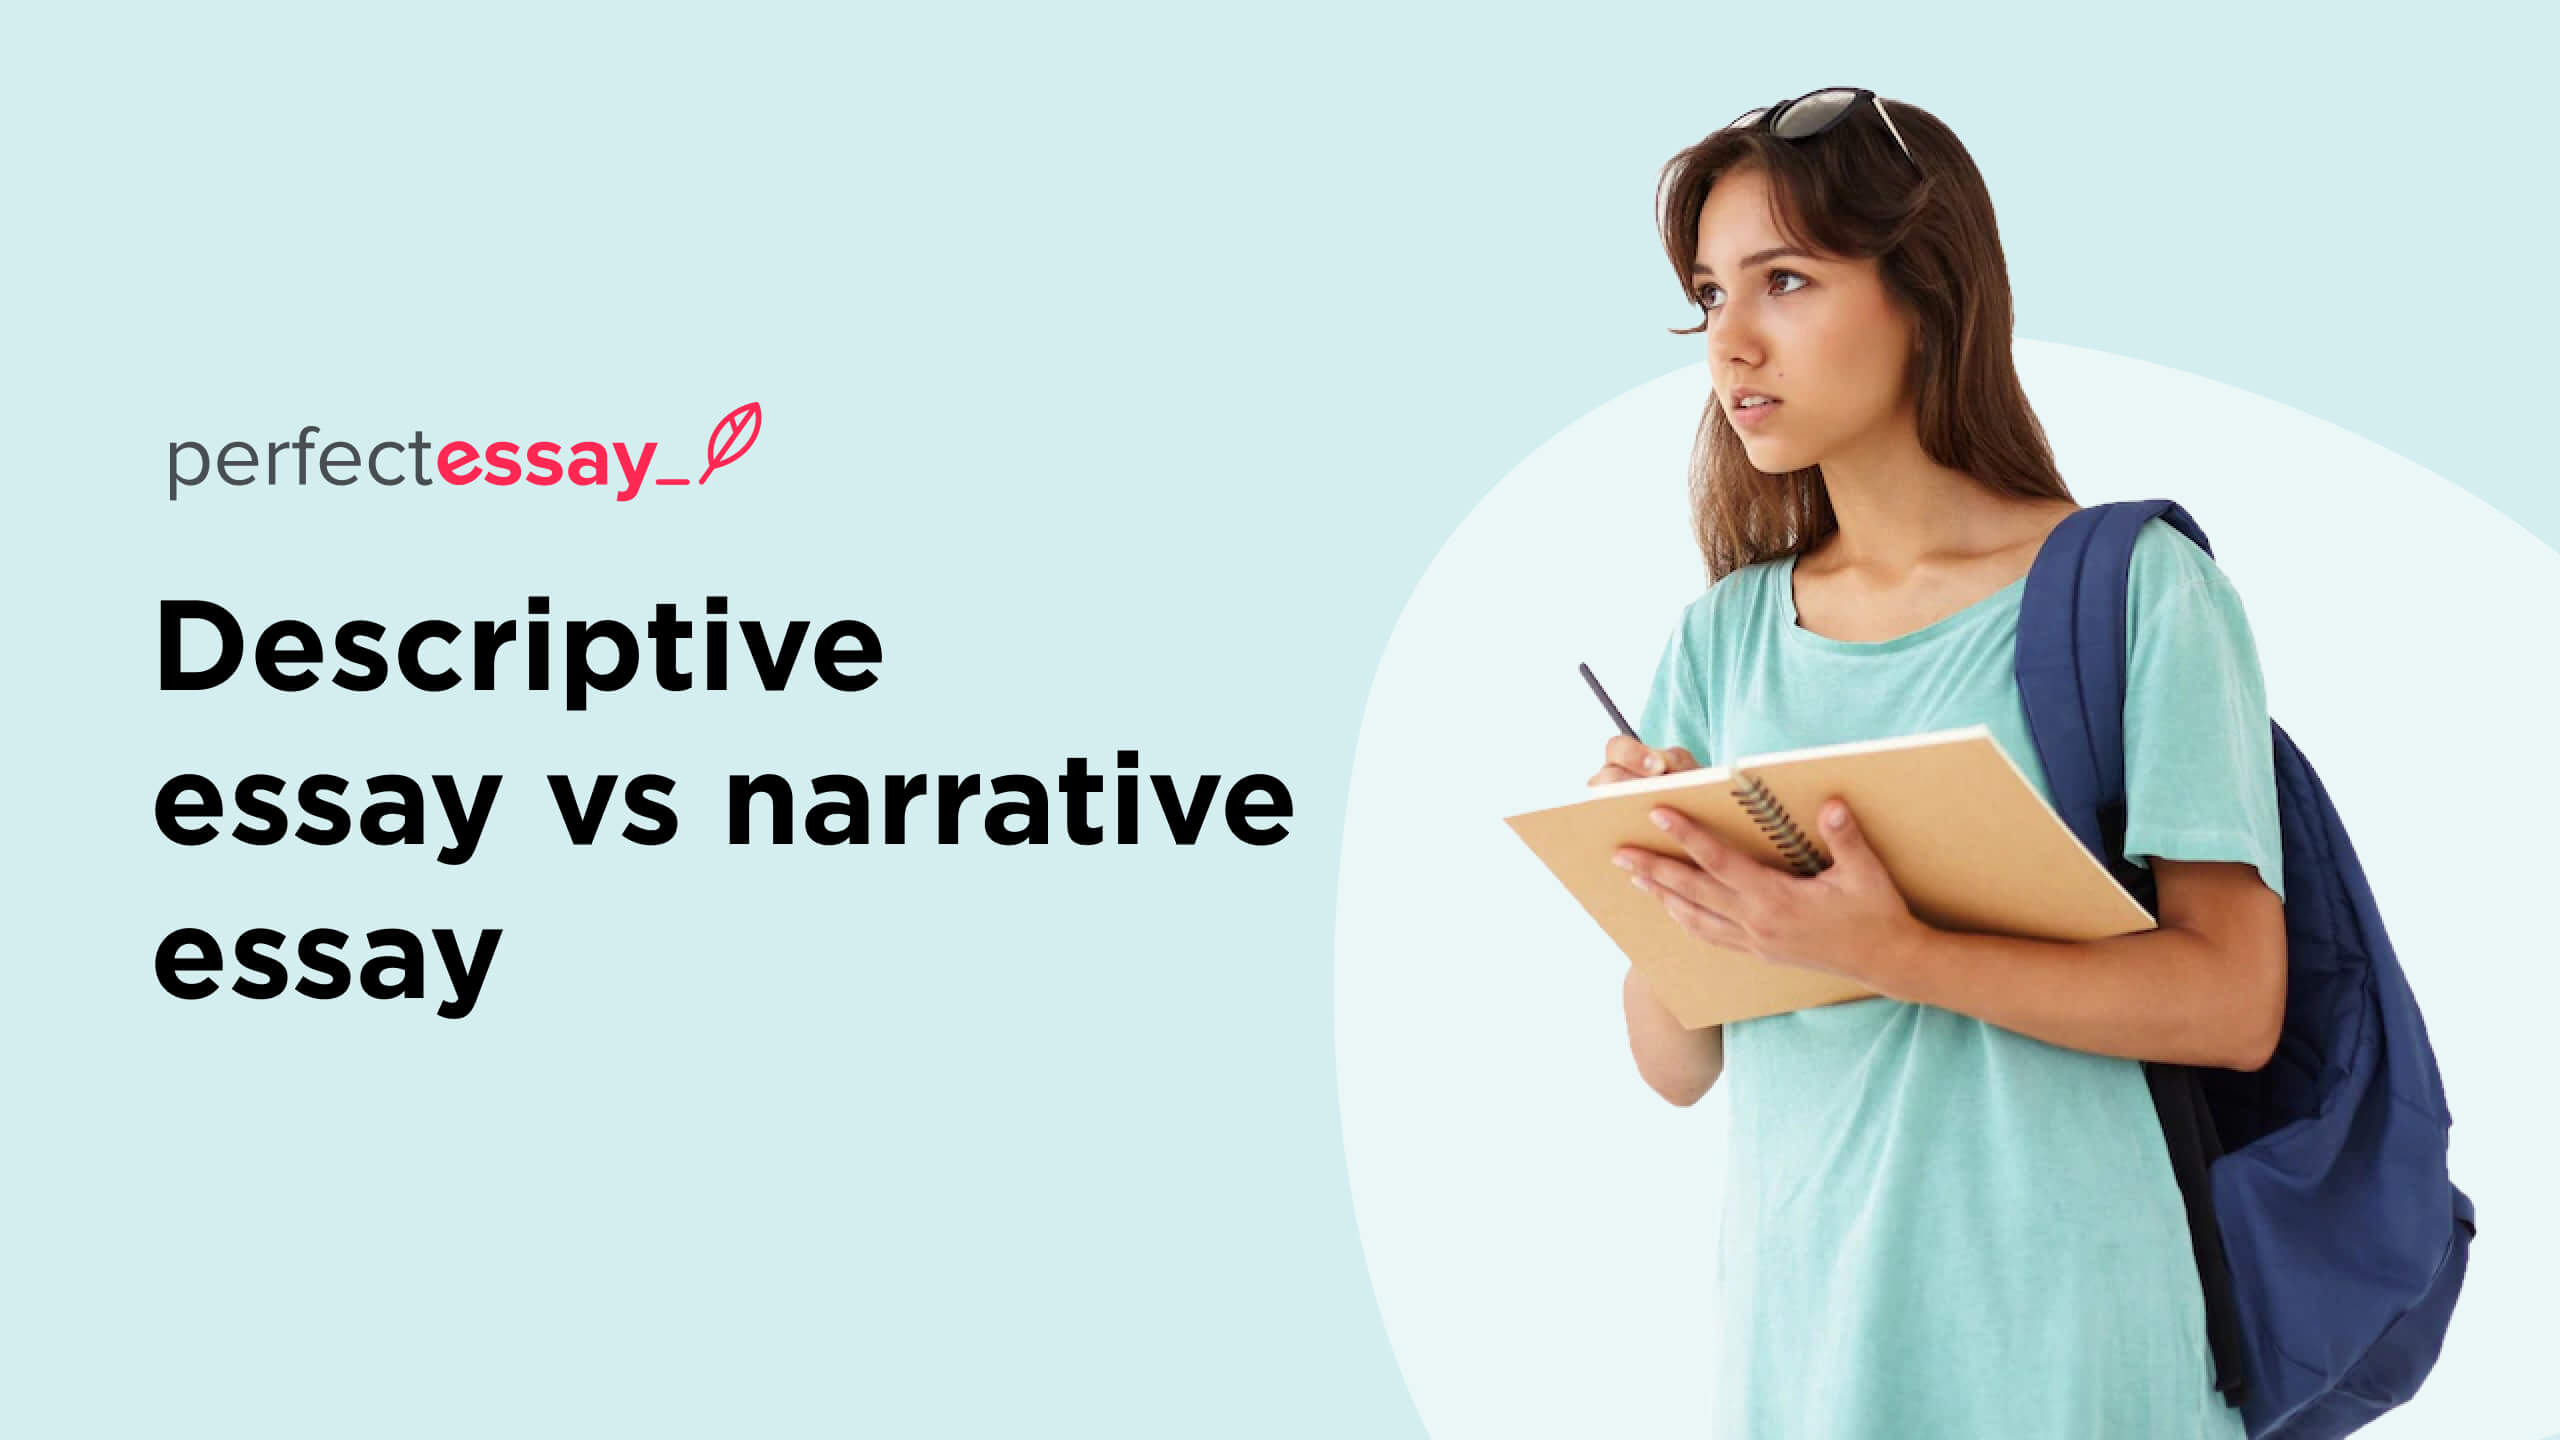 Descriptive essay vs narrative essay